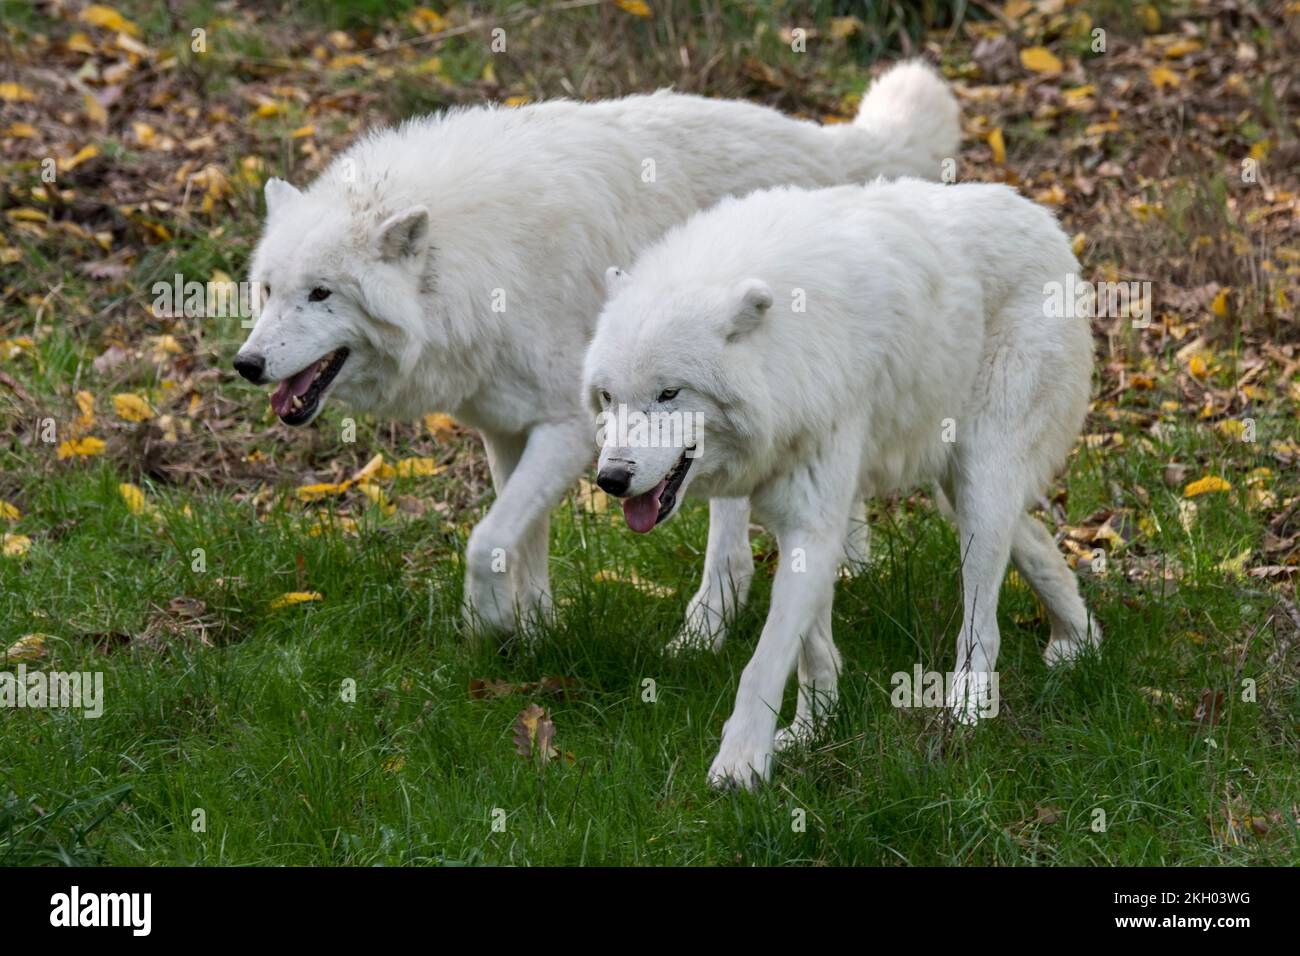 Dos lobos cautivos del Ártico / lobos blancos / lobos polares (Canis lupus arctos) caminando lado a lado, nativo de la tundra del Alto Ártico de Canadá Foto de stock